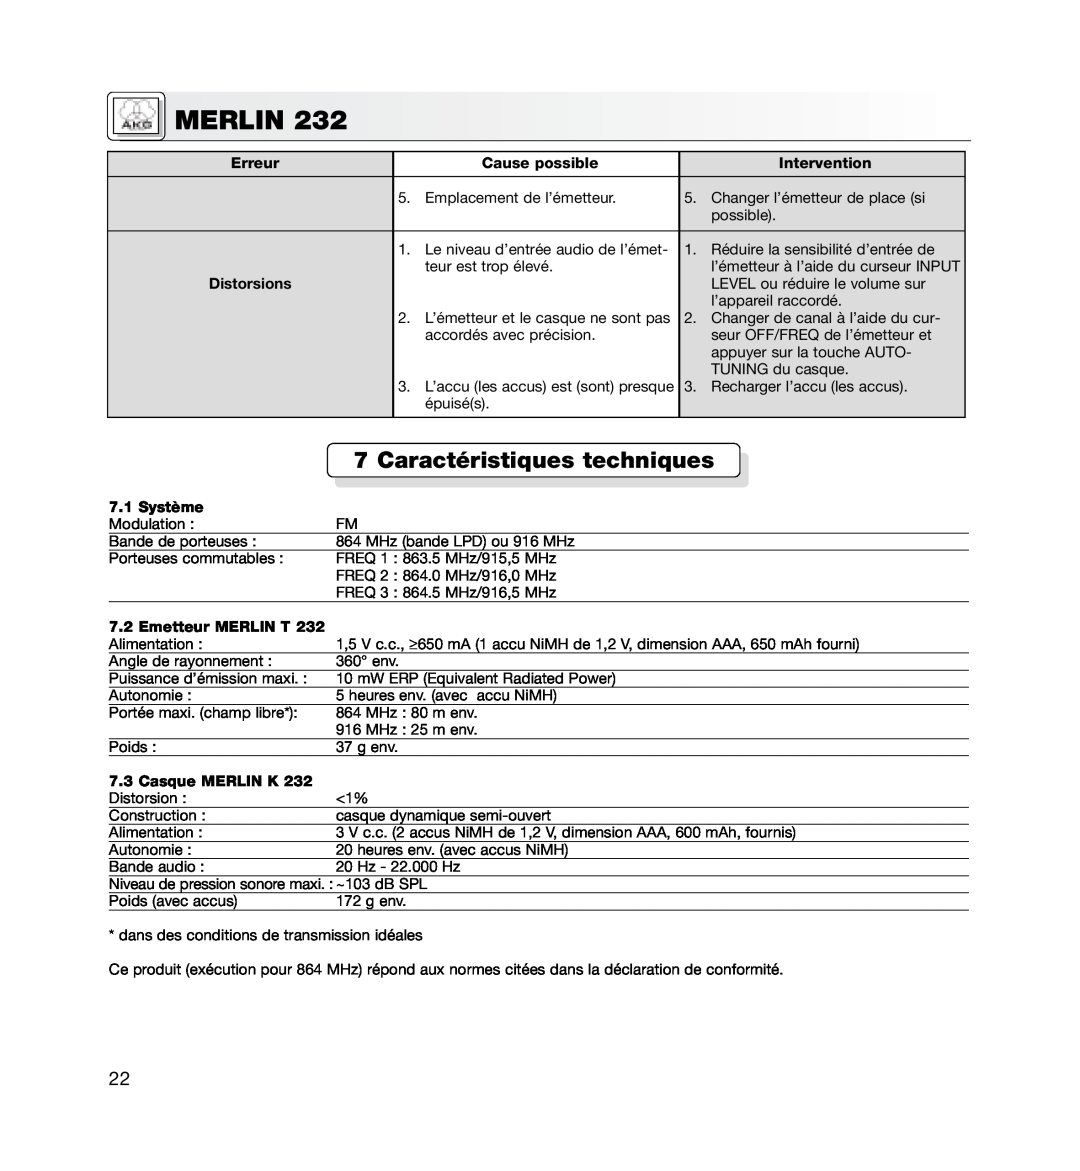 AKG Acoustics MERLIN 232 Caractéristiques techniques, Distorsions, Système, Emetteur MERLIN T, 7.3Casque MERLIN K, Merlin 